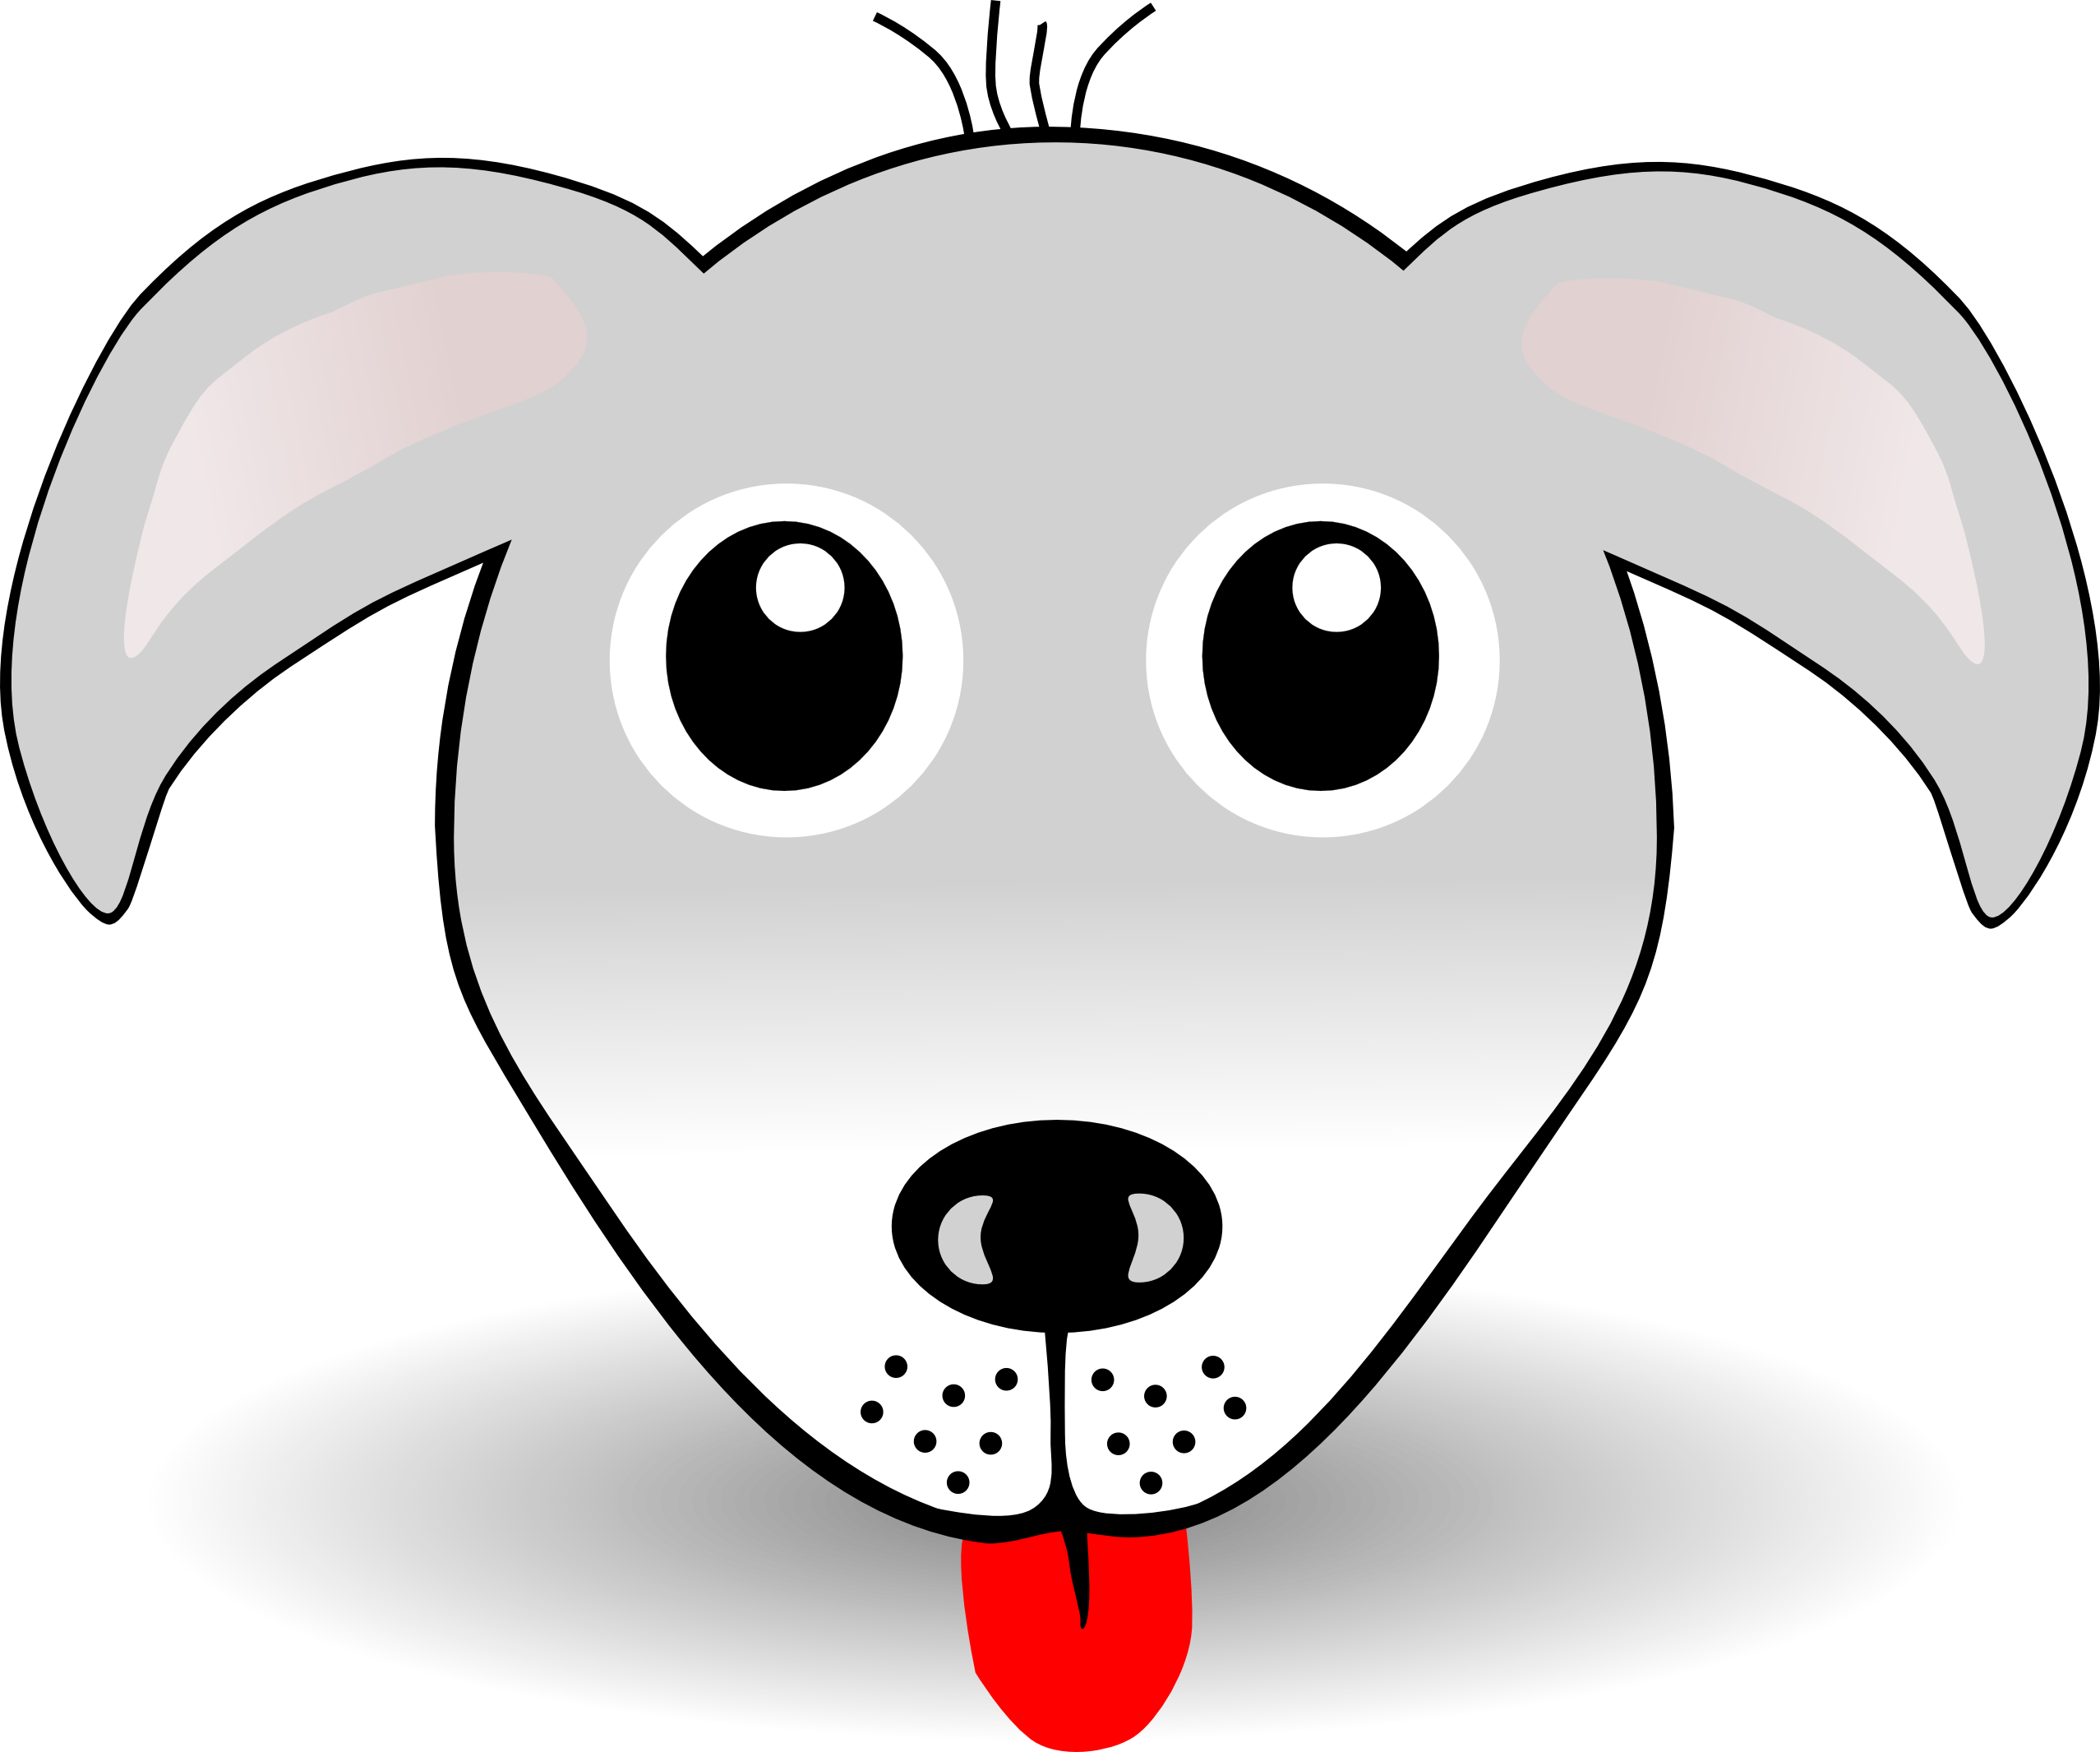 palomaironique Dog 1 Face Cartoon Grey Scalable ...